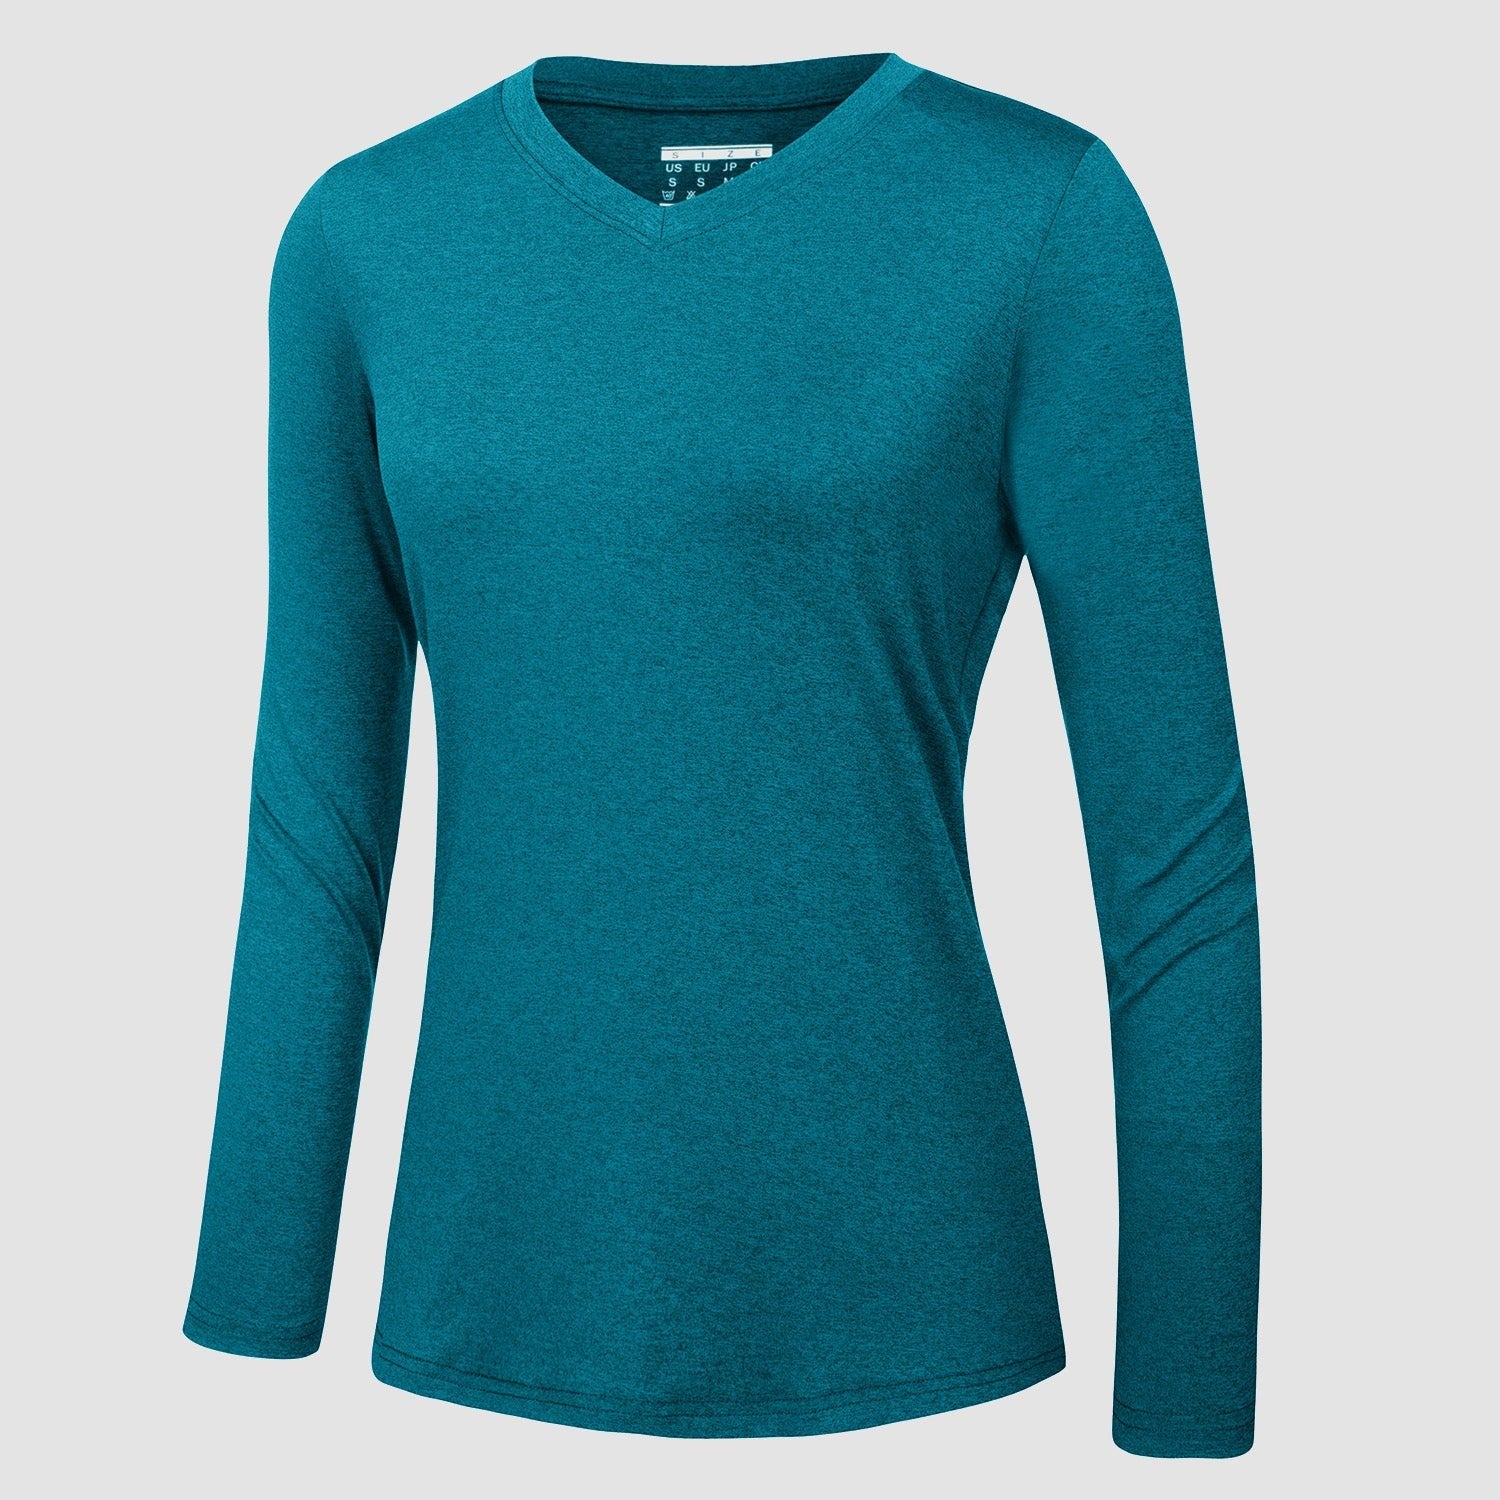 https://magcomsen.com/cdn/shop/products/Women_s-Long-Sleeve-Shirt-V-Neck-SPF-Shirts-UPF-50_-Quick-Dry-Workout-Hiking-Tee-Shirts-Rashguard_18-828393.jpg?v=1700532449&width=1500